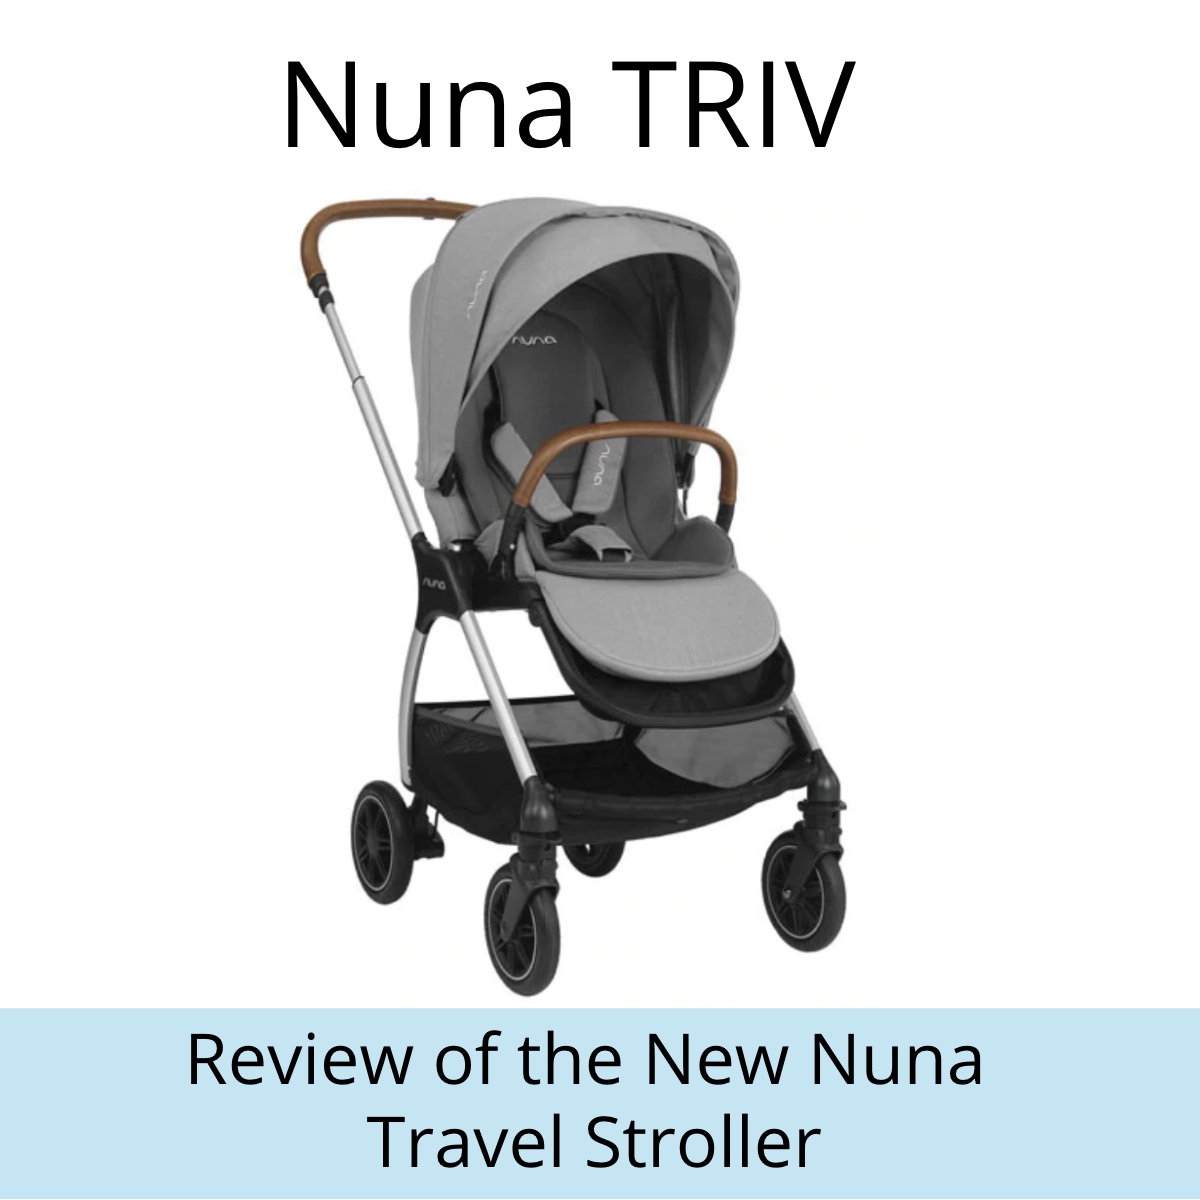 Nuna triv reviews